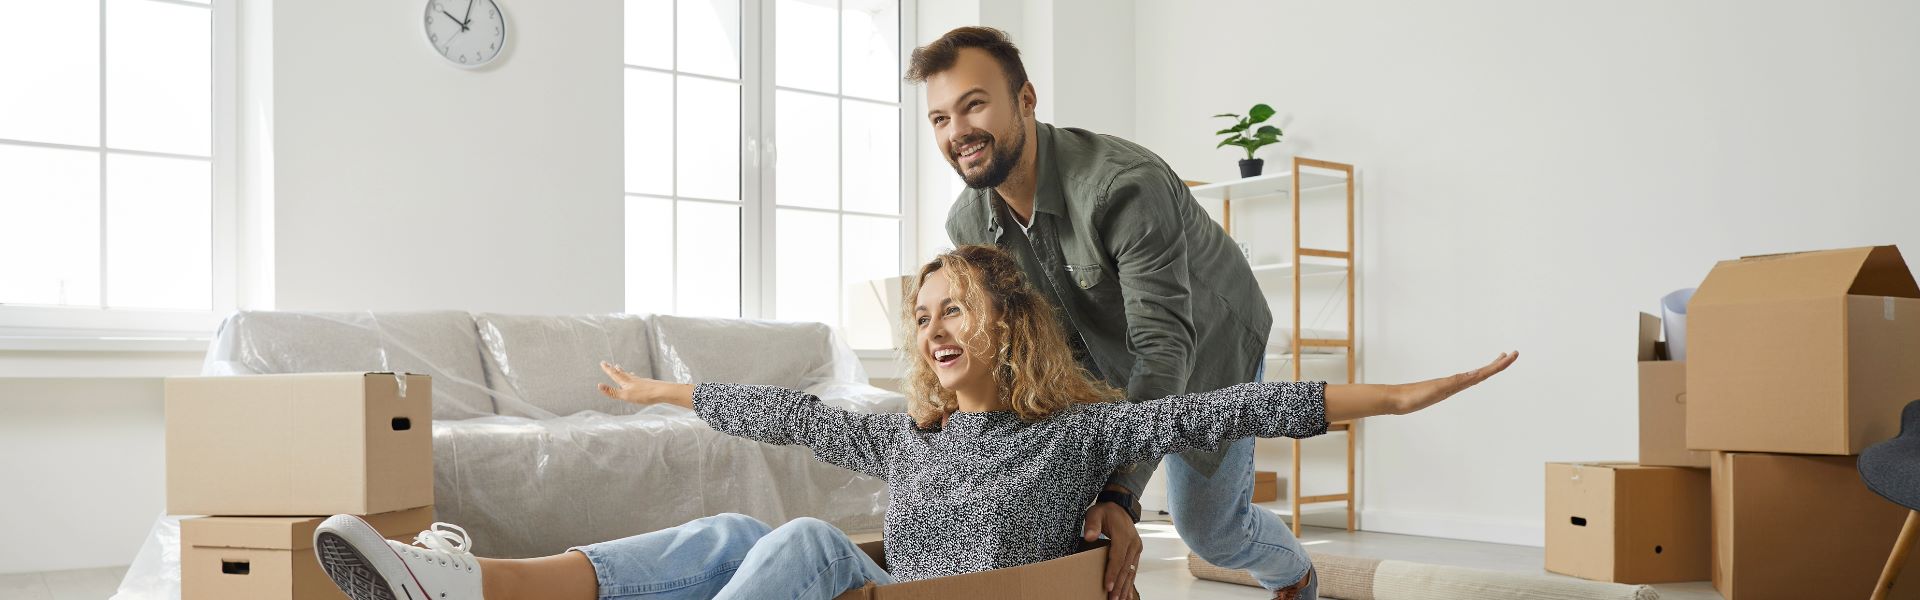 Un homme poussant joyeusement sa femme assise dans une boîte en carton pendant leur déménagement après avoir vendu leur bien immobilier à Anglet.